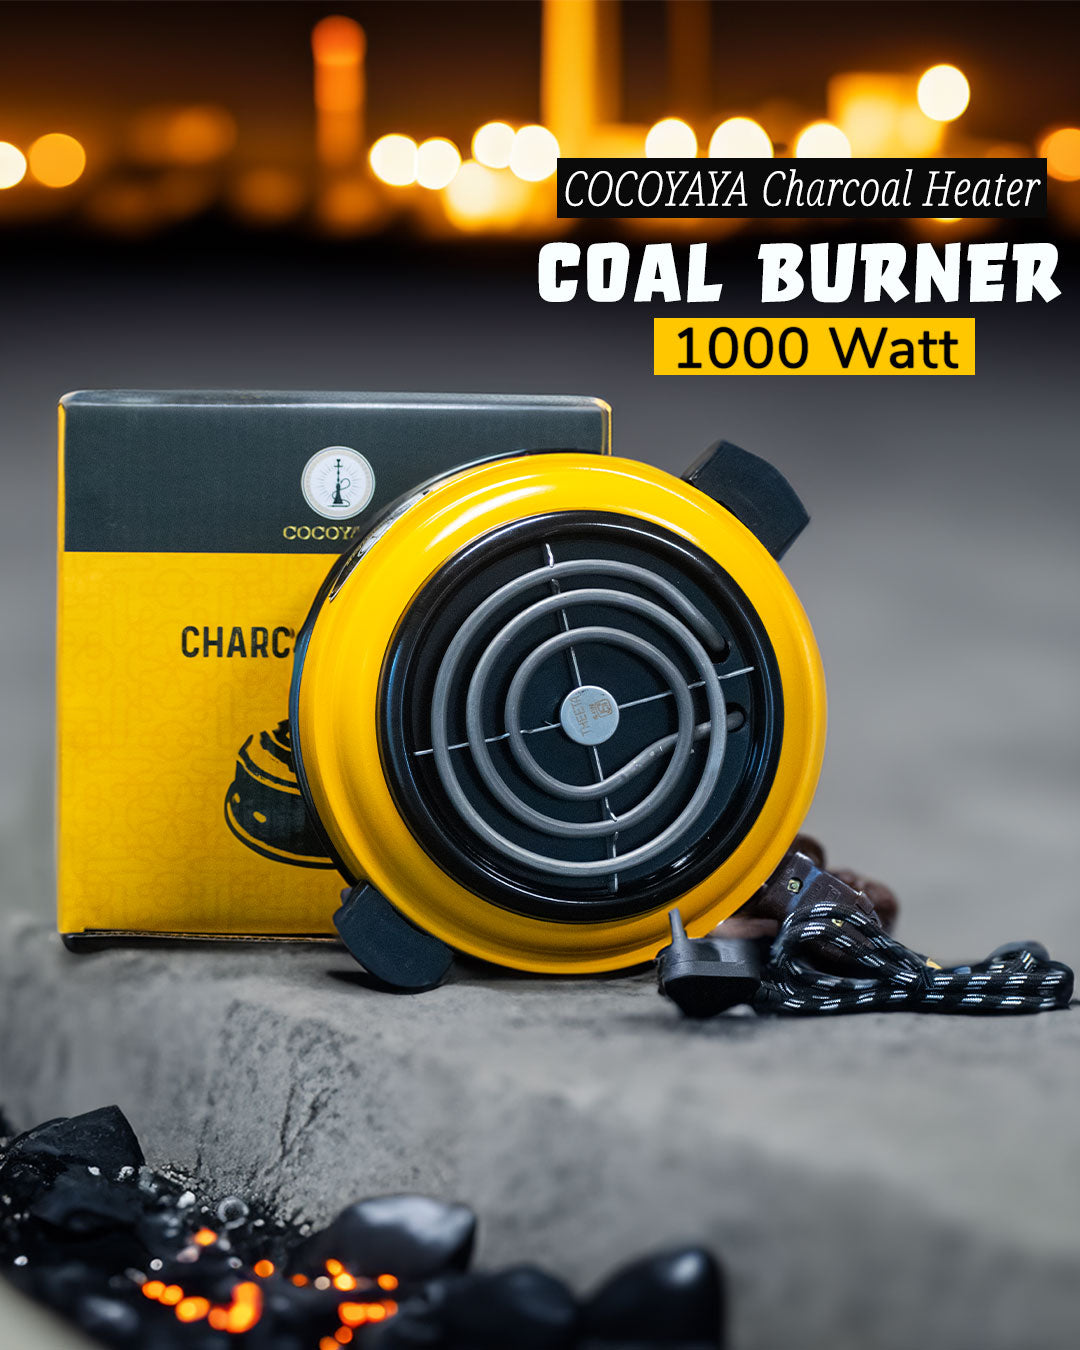 COCOYAYA Charcoal Heater Coal Burner - 1000 Watt